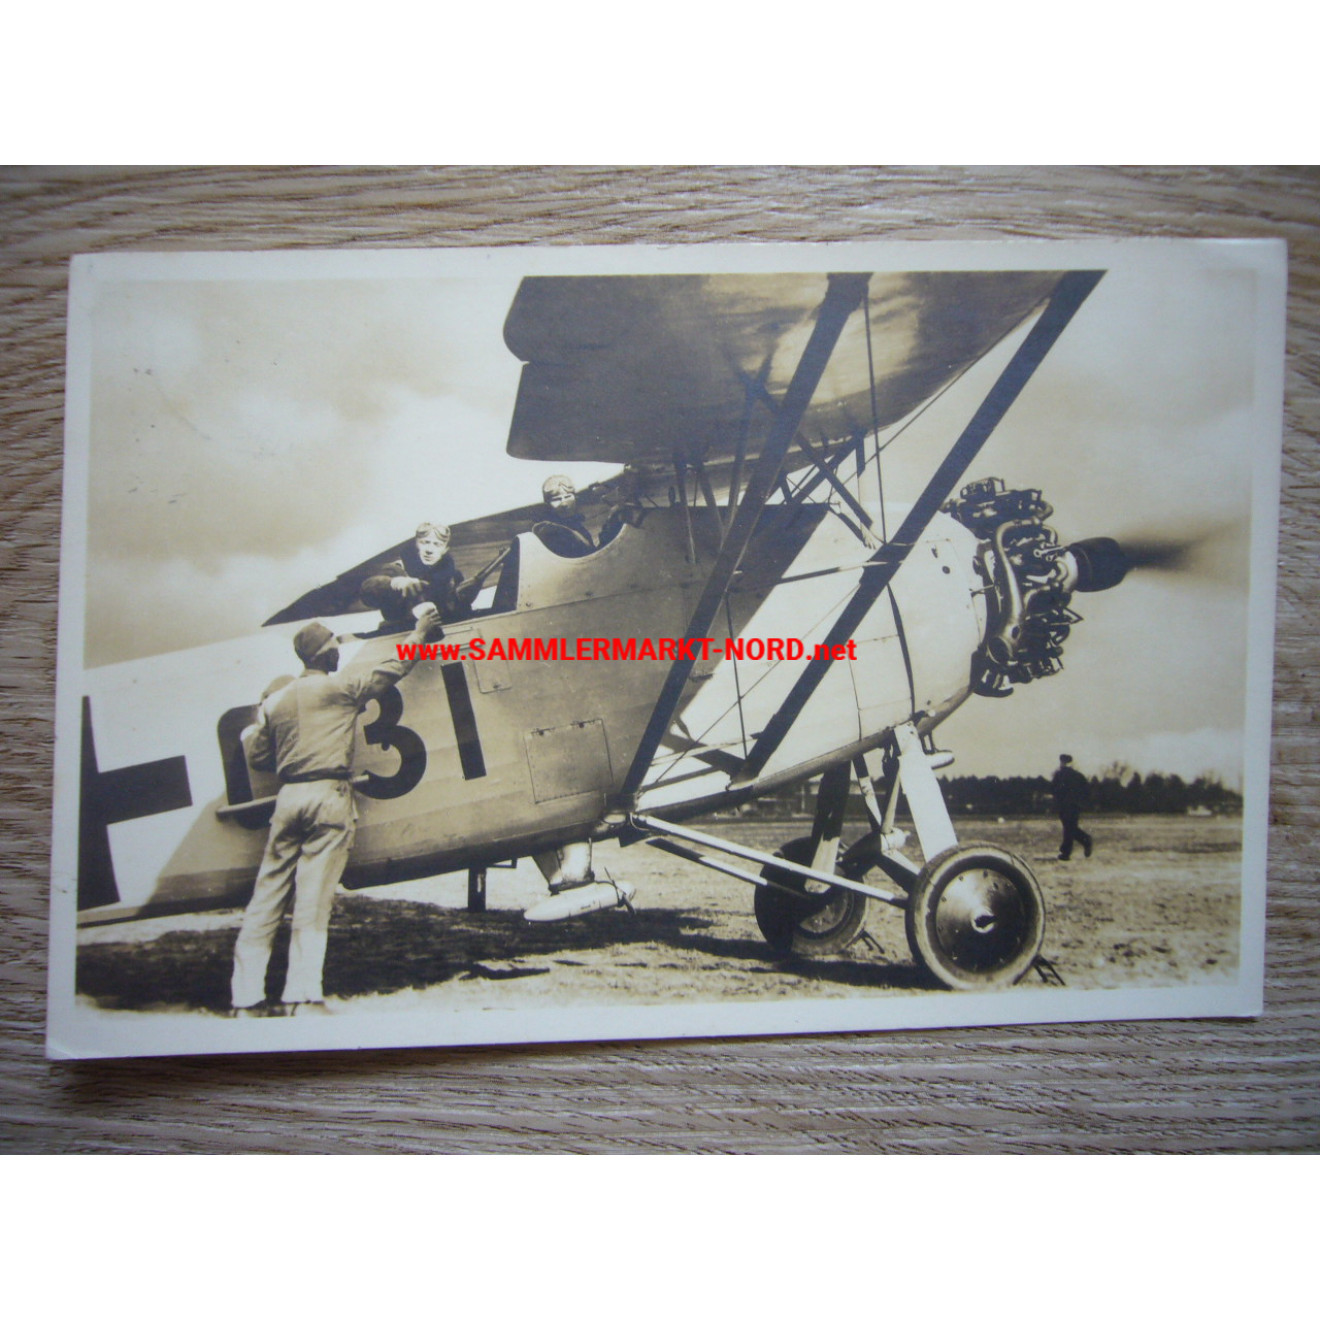 Luftwaffe postcard - Heinkel reconnaissance aircraft